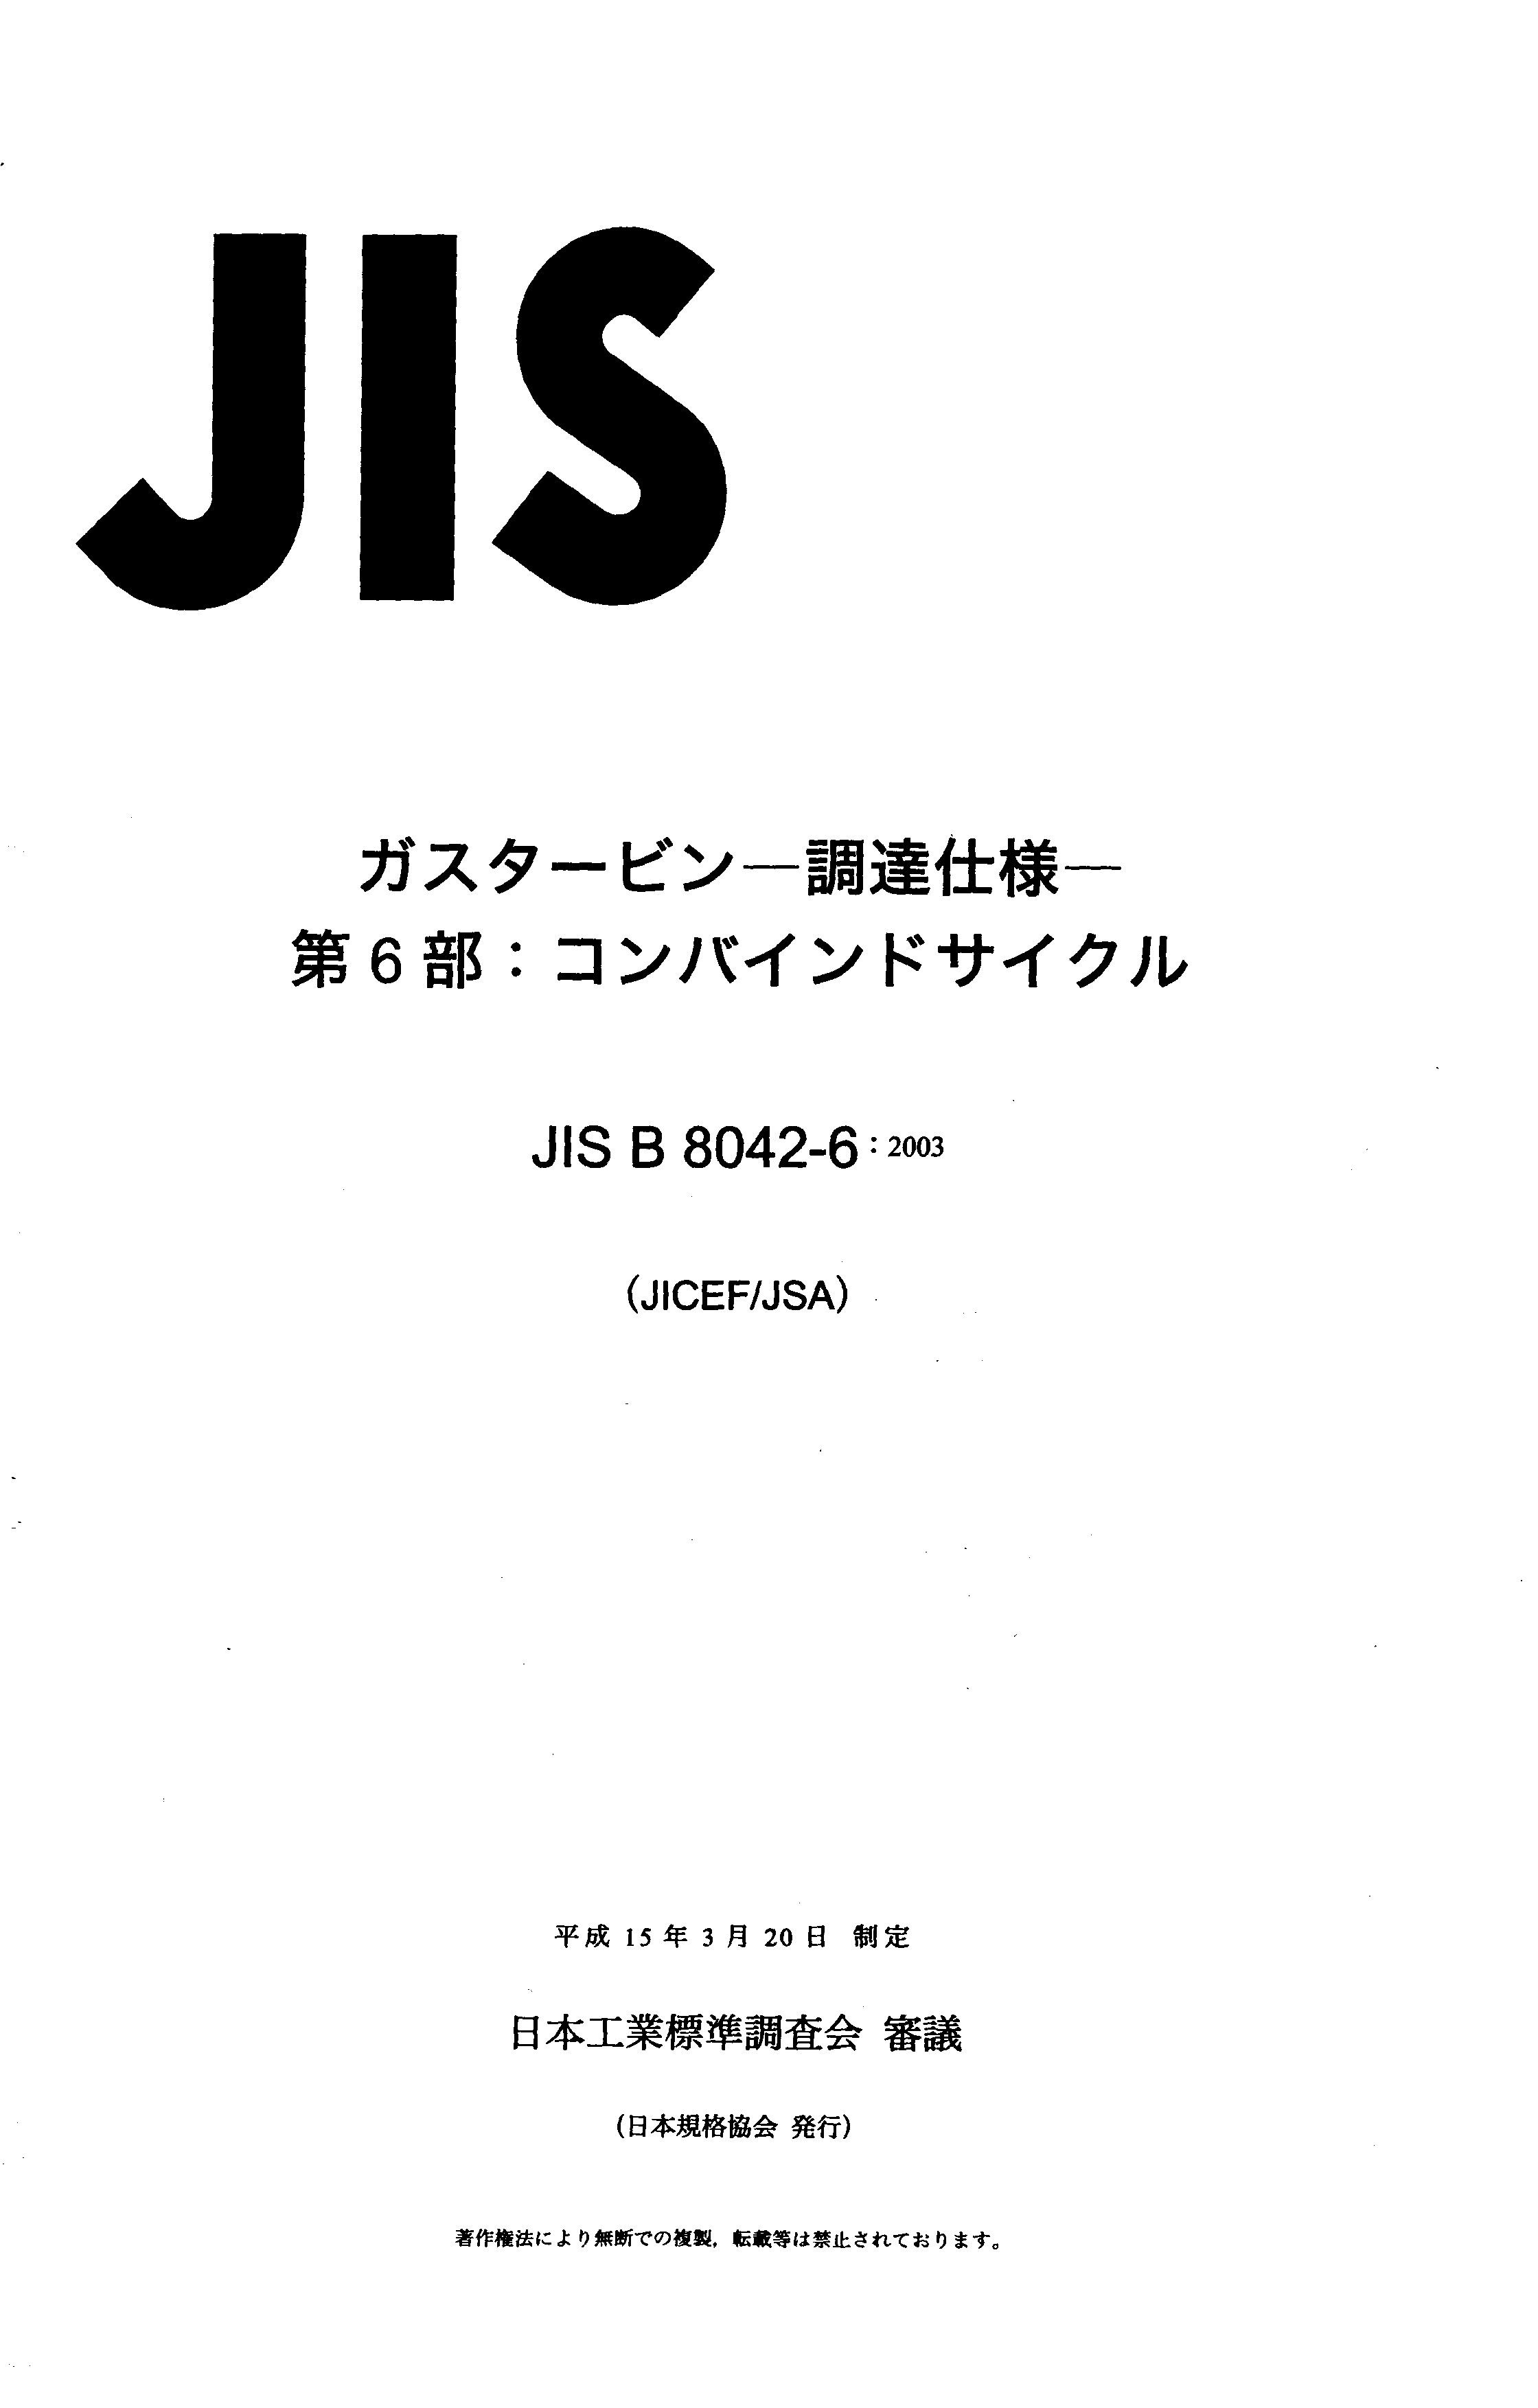 JIS B 8042-6:2003封面图